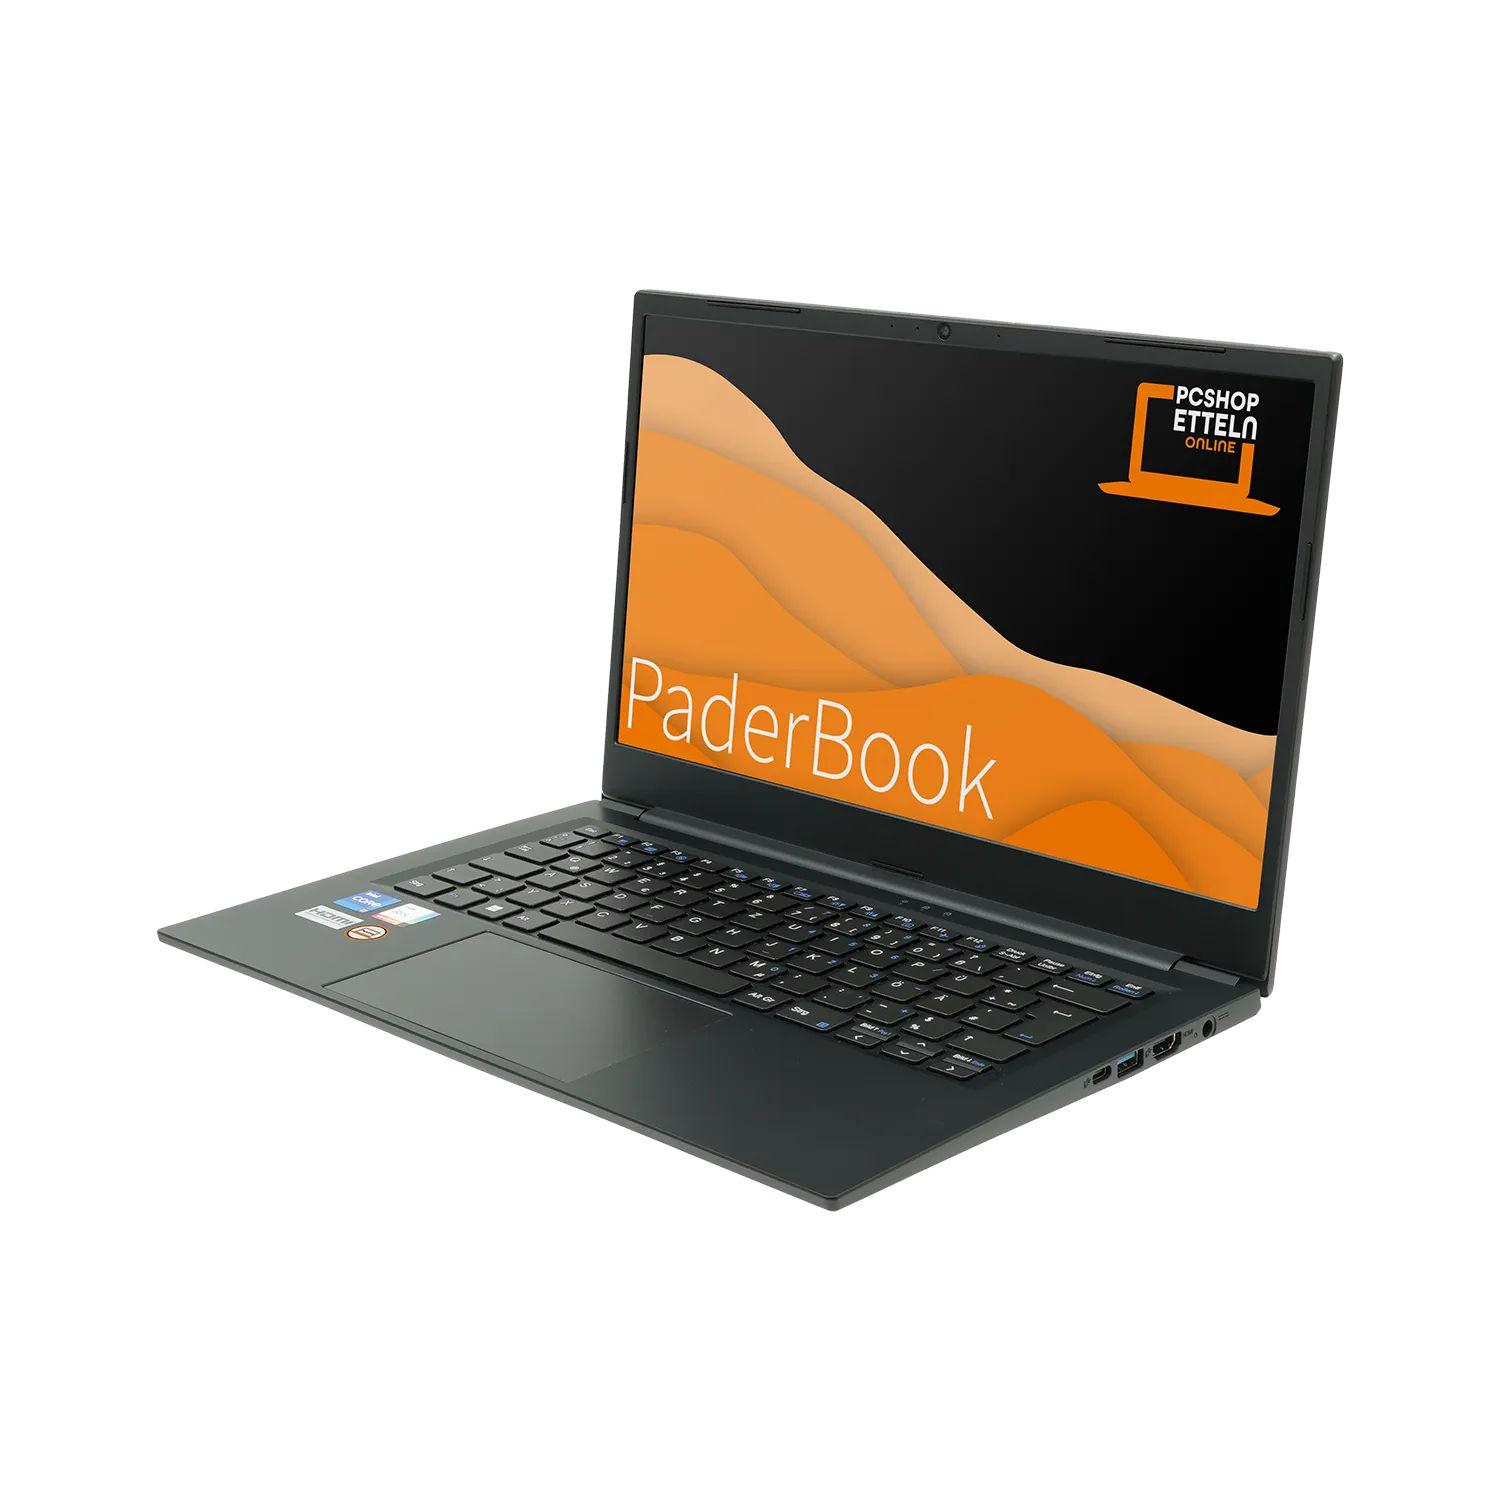 1000 32 SSD, fertig GB und Pro, Zoll GB PADERBOOK RAM, Office mit Display, installiert i74, 2021 aktiviert, Concept Schwarz 14 Notebook